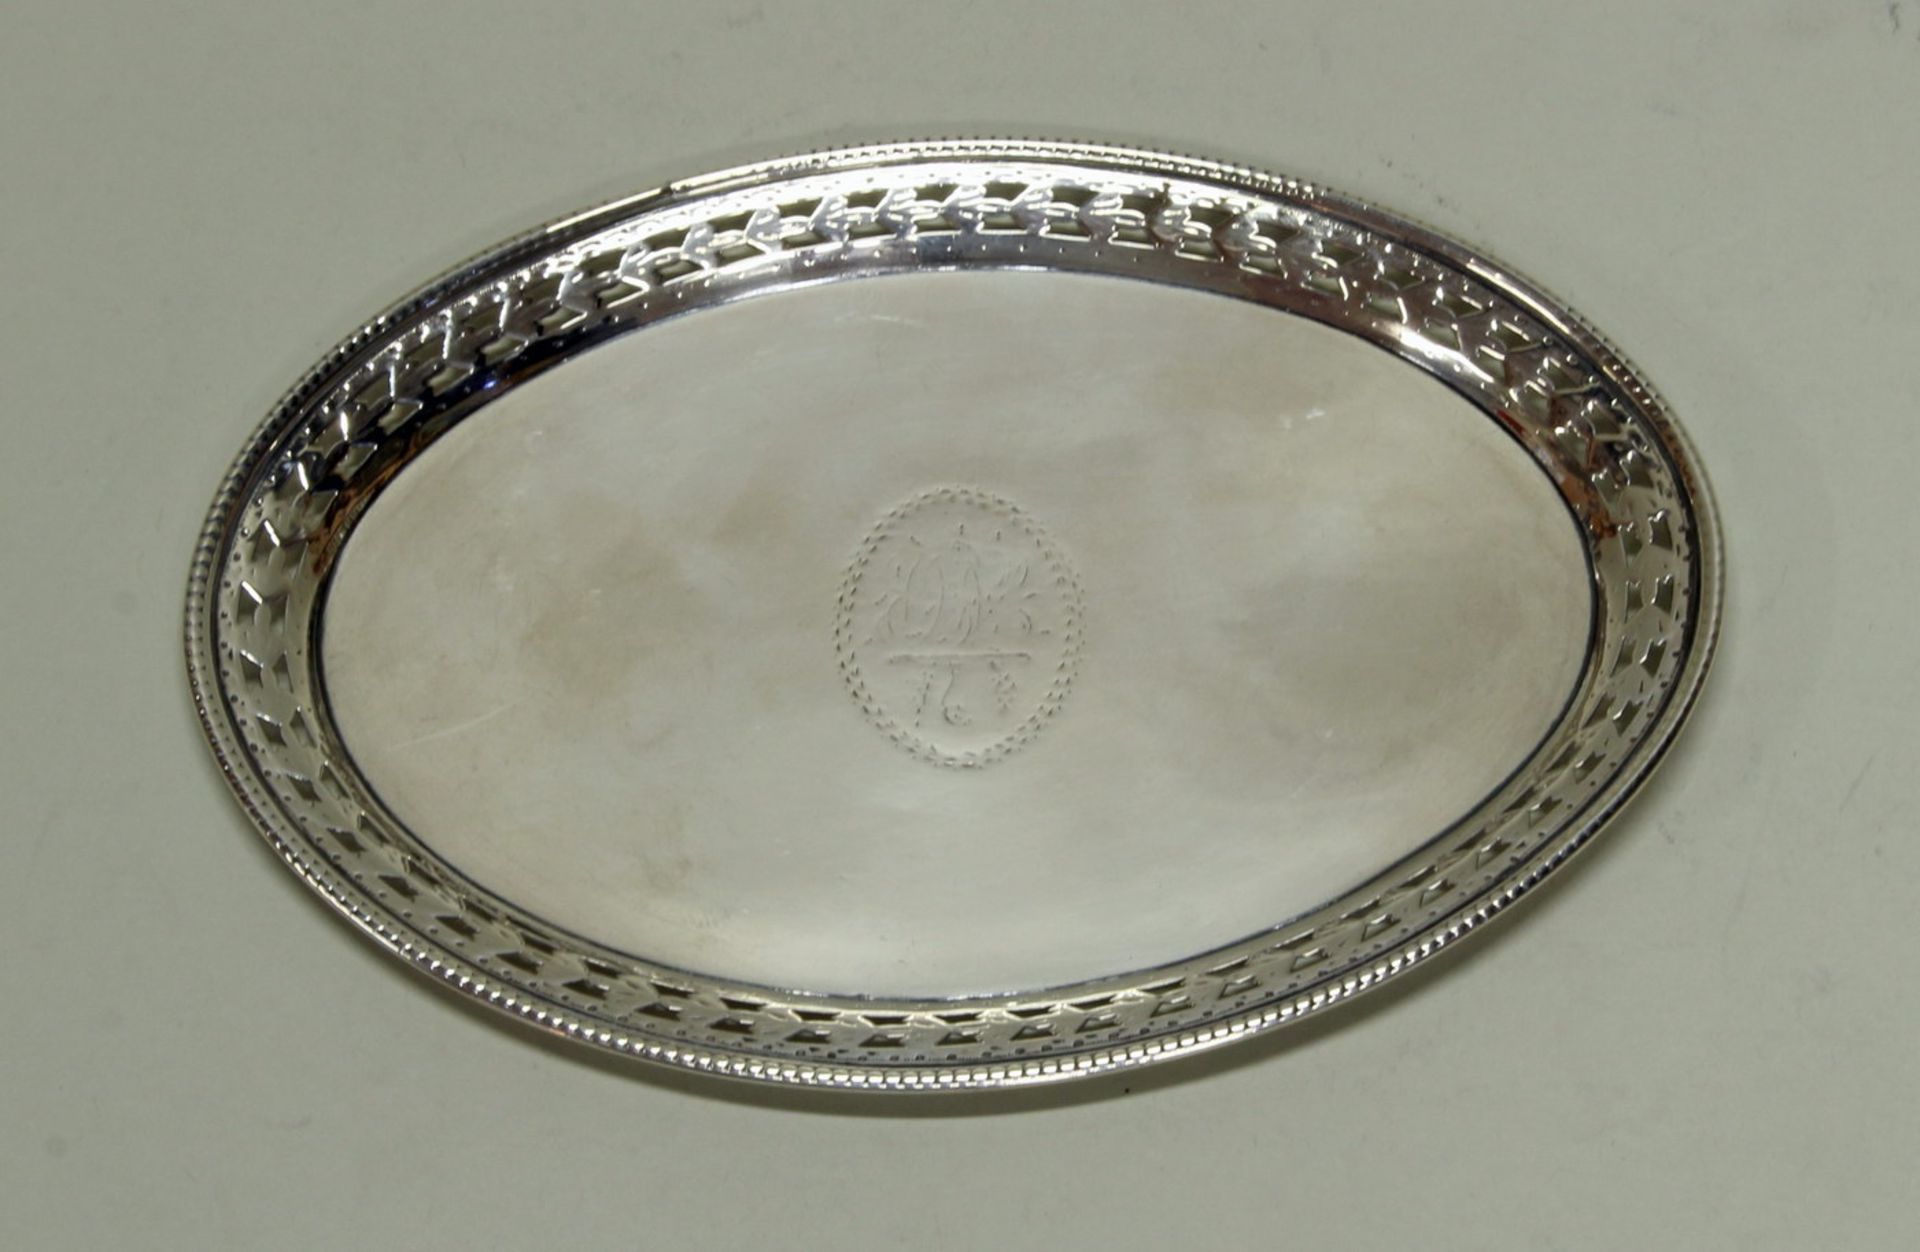 Untersetzer, Silber 925, London, 1781, Robert Hennell, oval, Rand à jour gearbeitet, Spiegel mit